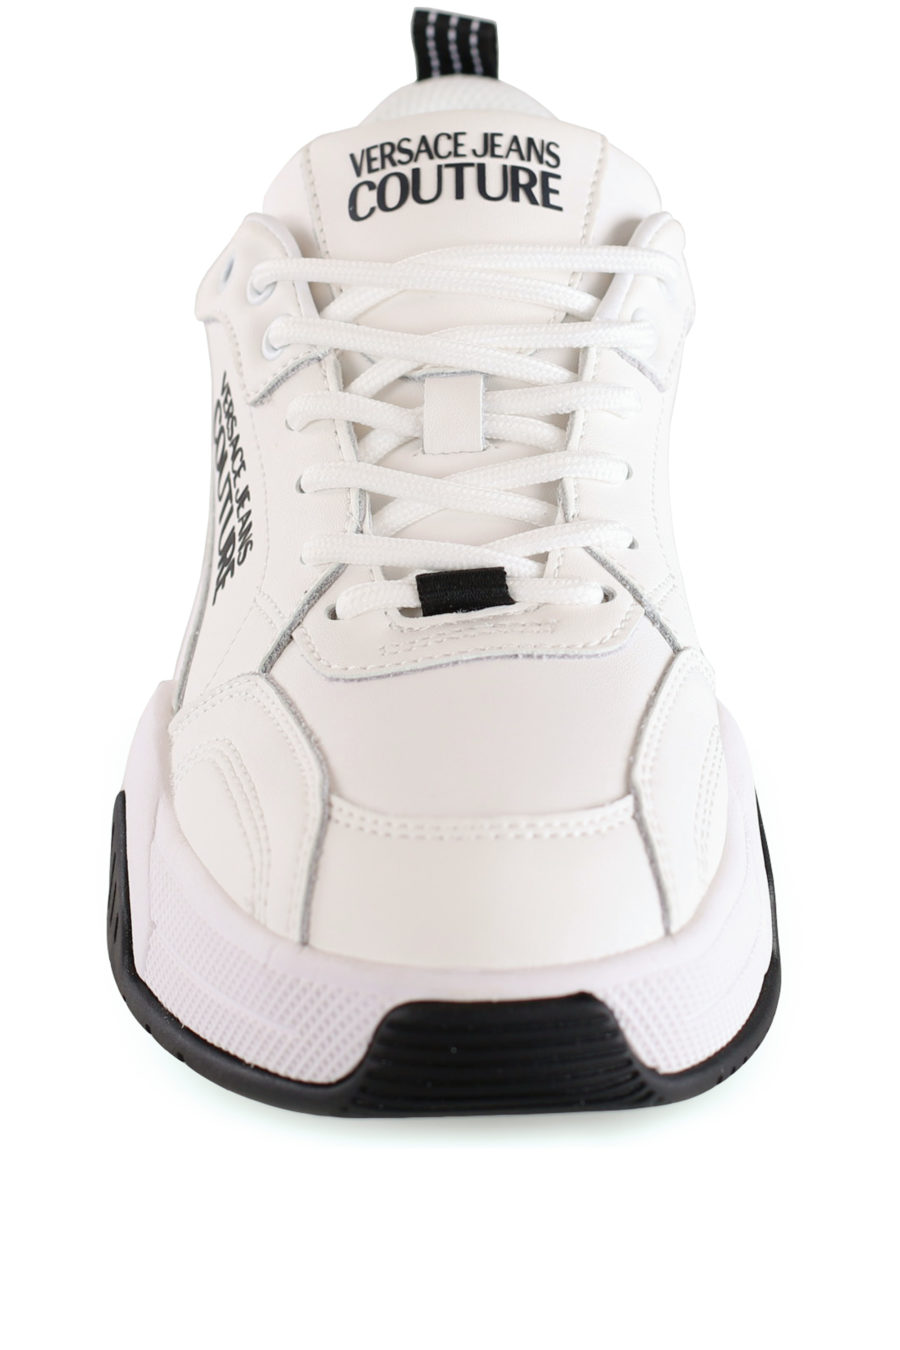 Zapatillas blancas con logotipo negro de la marca - IMG 8452 copia